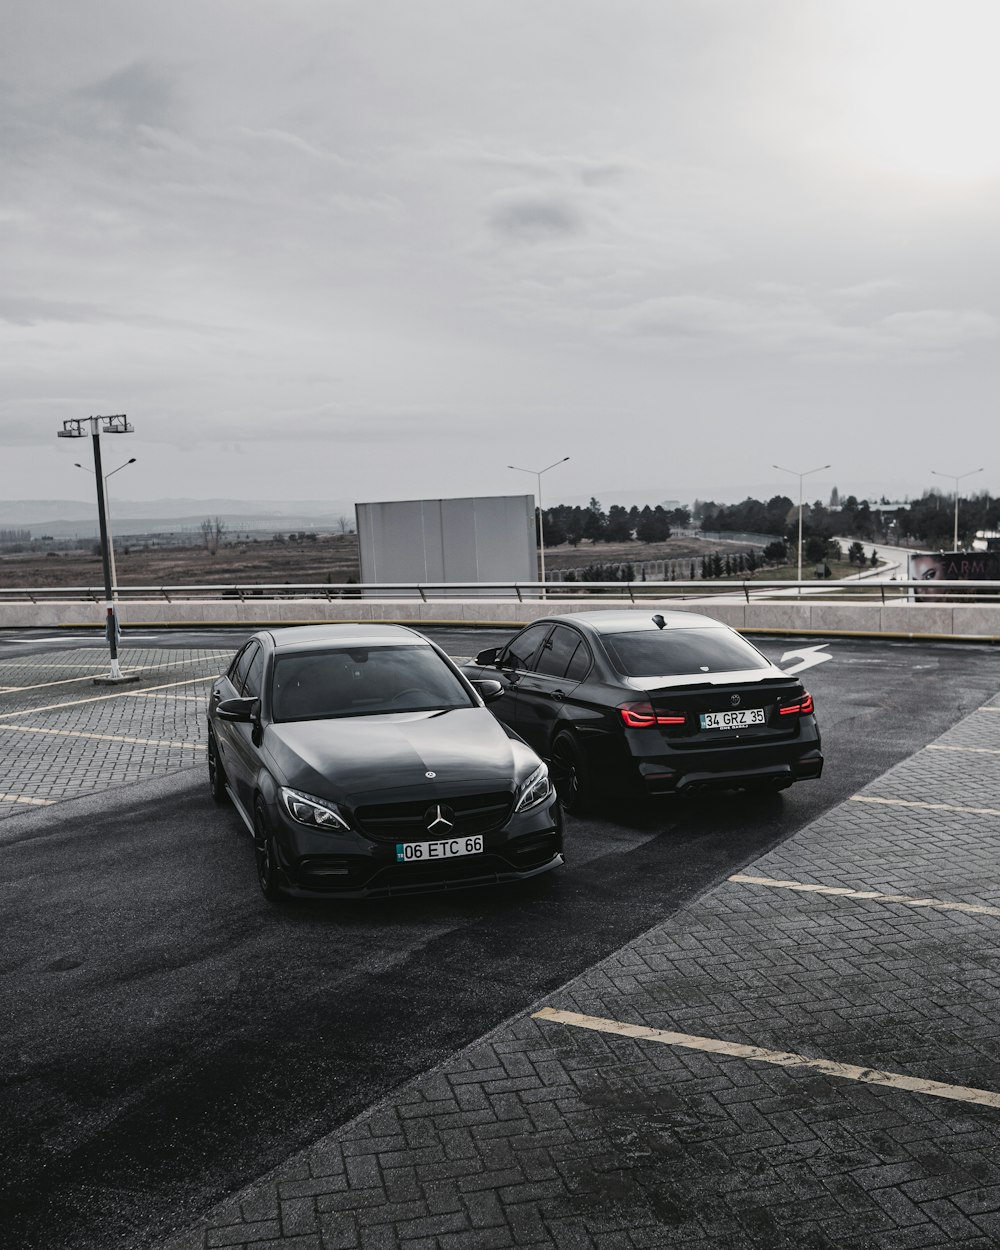 Un par de autos estacionados en un estacionamiento